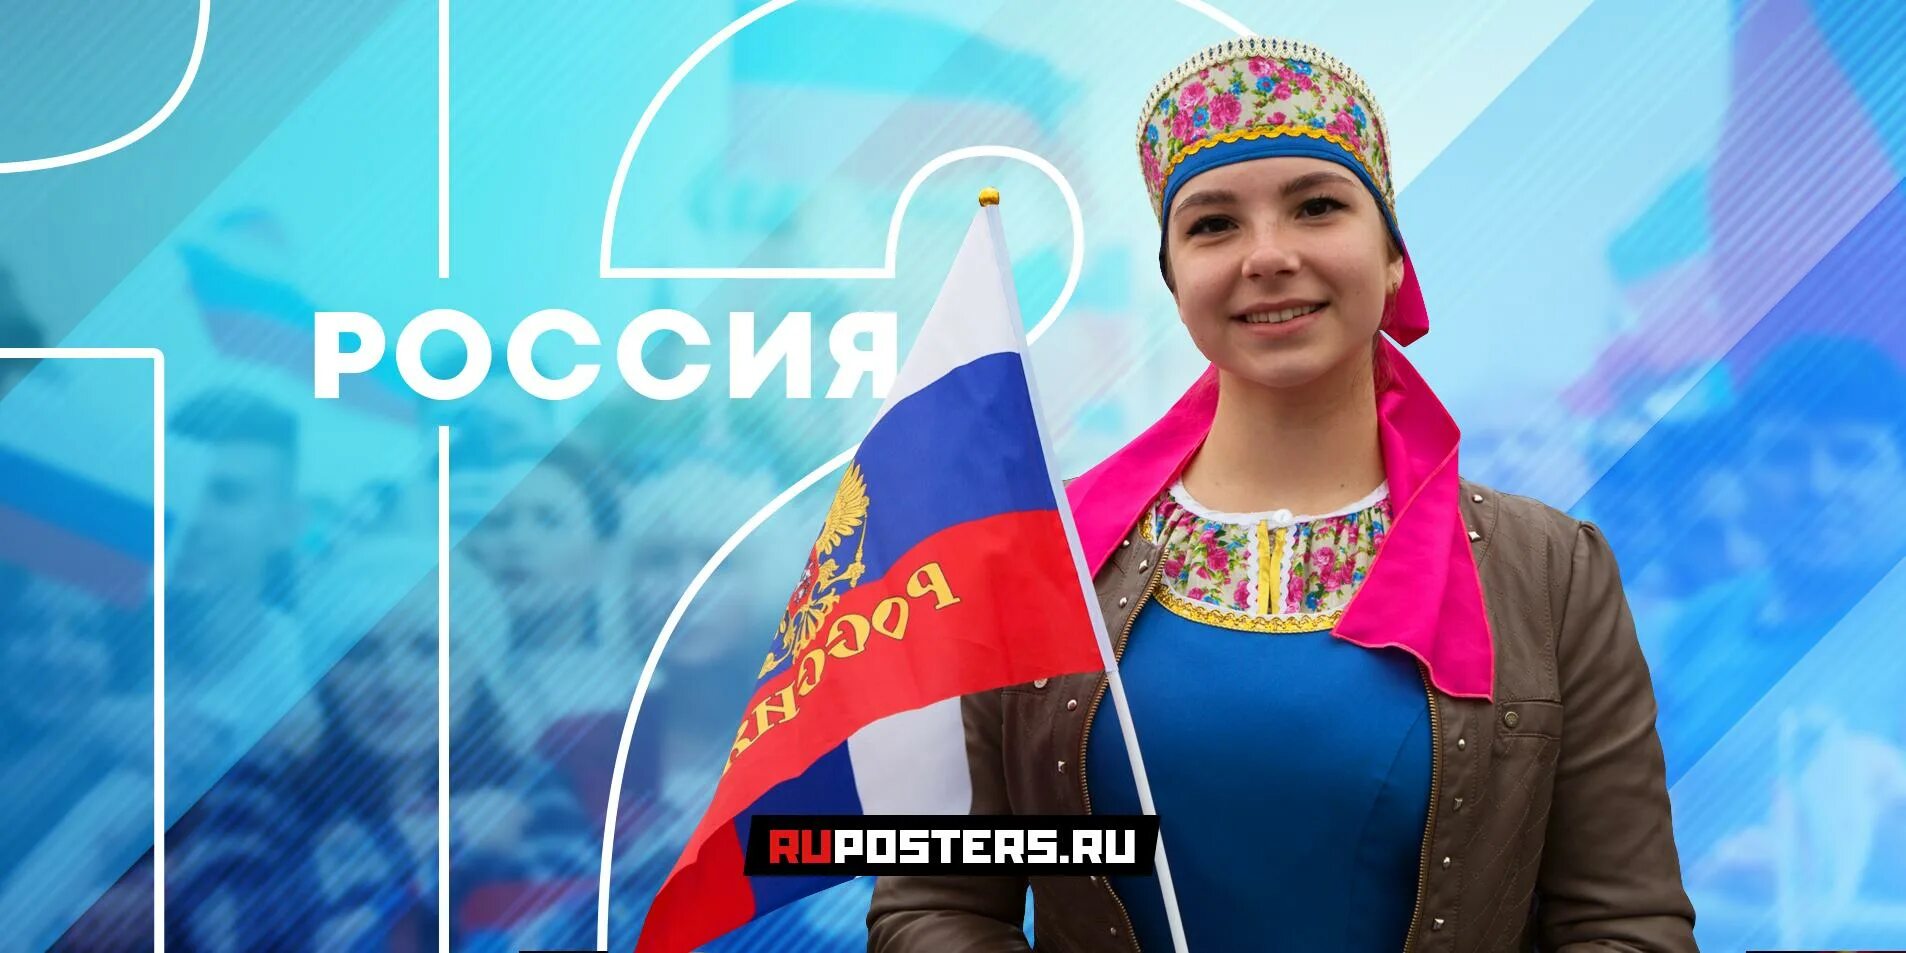 Флаг России 2020. Новый флаг РФ 2020. Новый флаг России 2016.